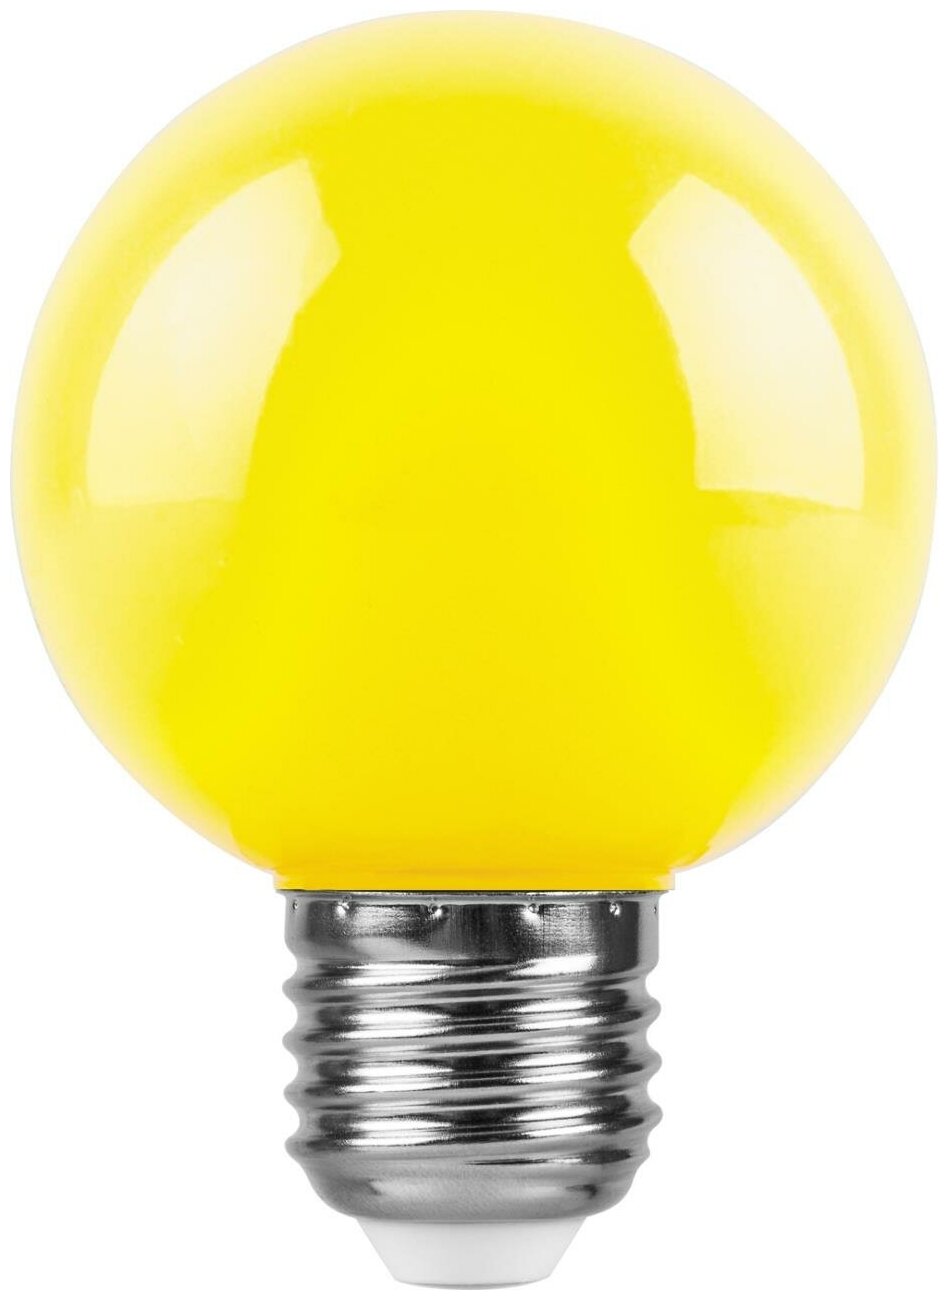 Feron Лампа св/д шар G60 E27 3W(220°) желтая матовая 84x60 д/гирлянды Белт Лайт LB-371 25904